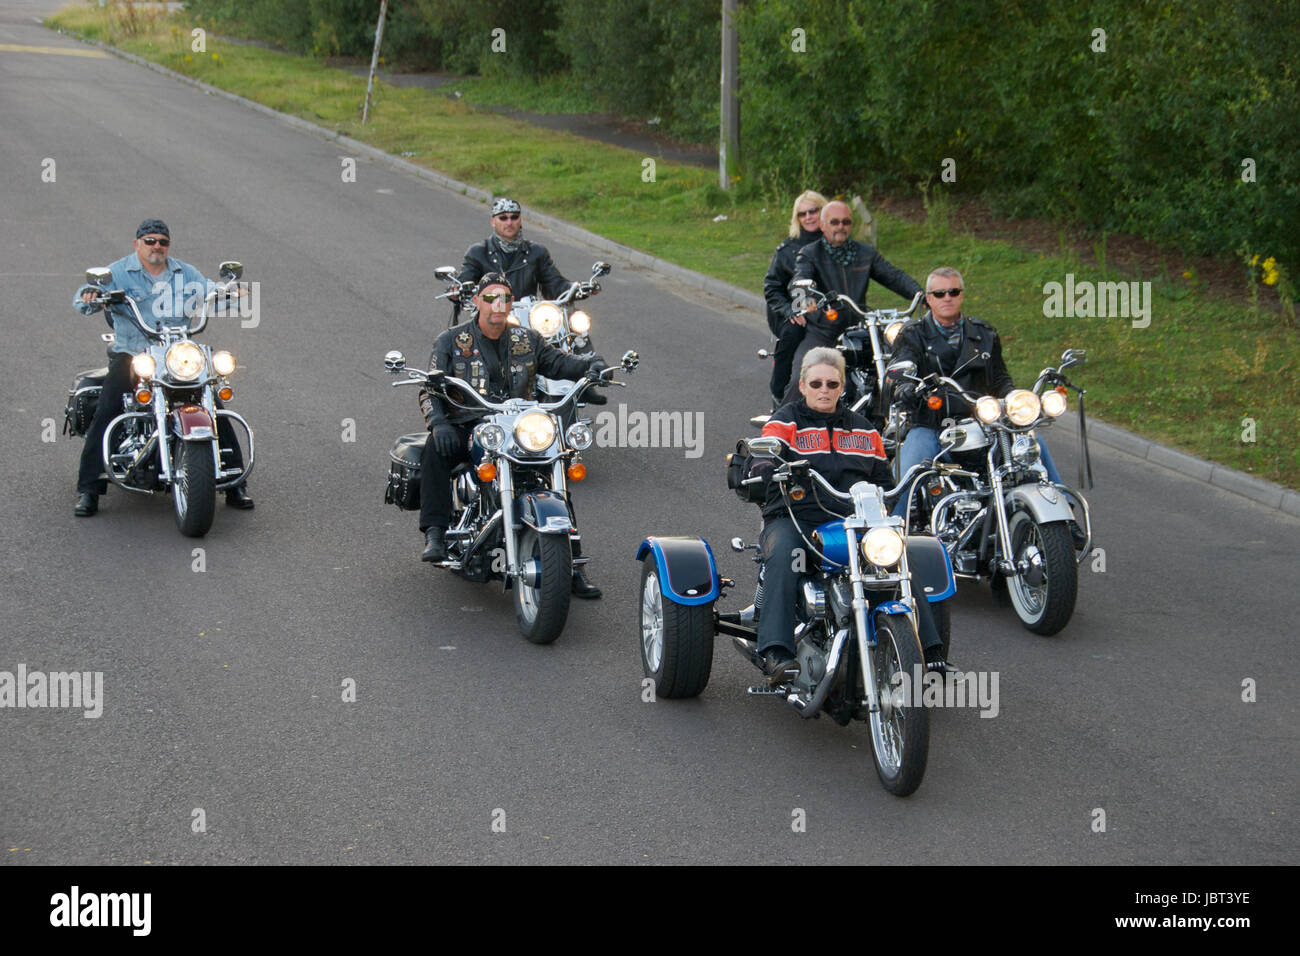 Un groupe de motards et de moto Harley Davidson sur la route Banque D'Images